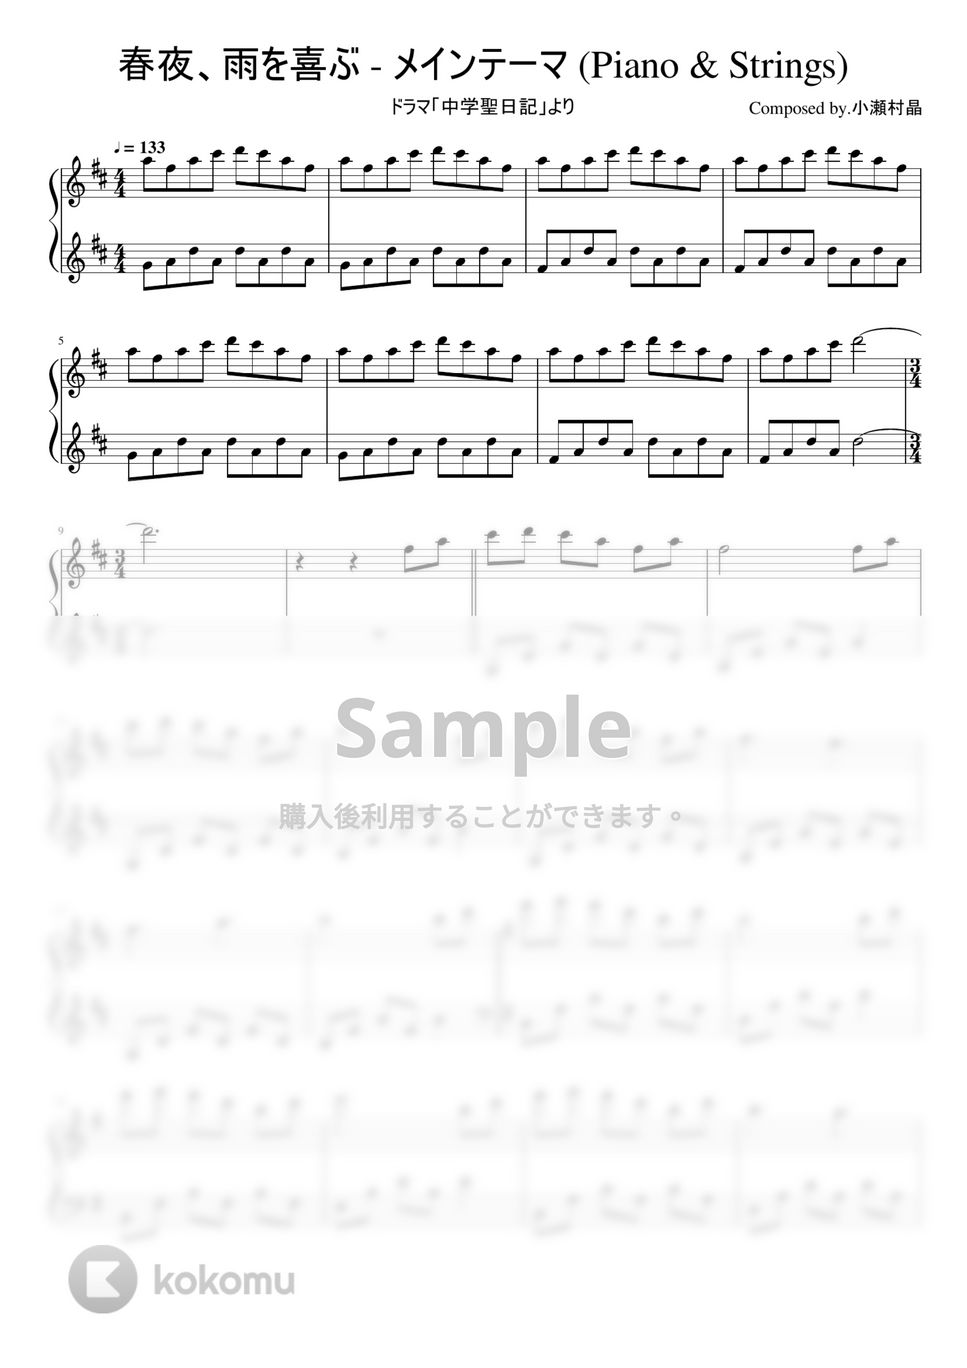 ドラマ「中学聖日記」 - 「春夜、雨を喜ぶ - メインテーマ(Piano & Strings)」ピアノソロ by ちゃんRINA。